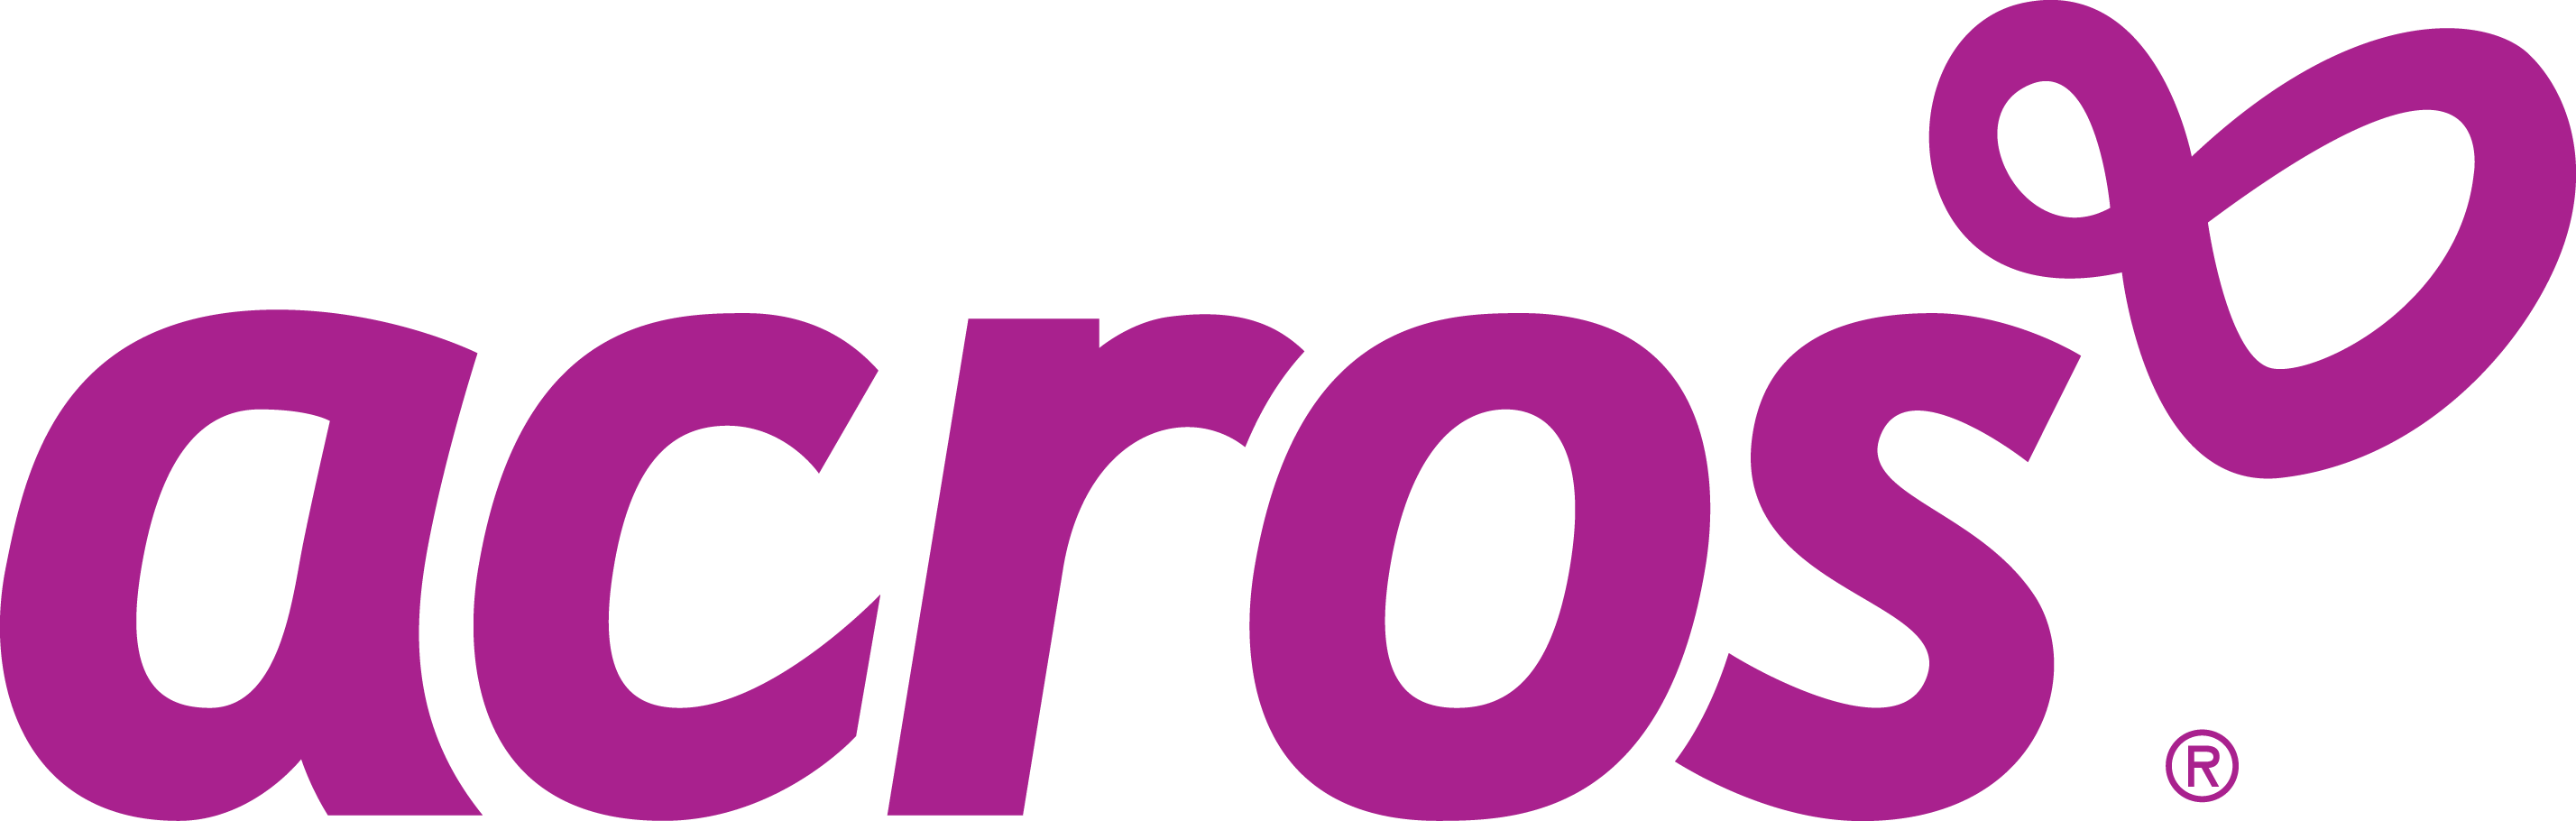 Acros brand